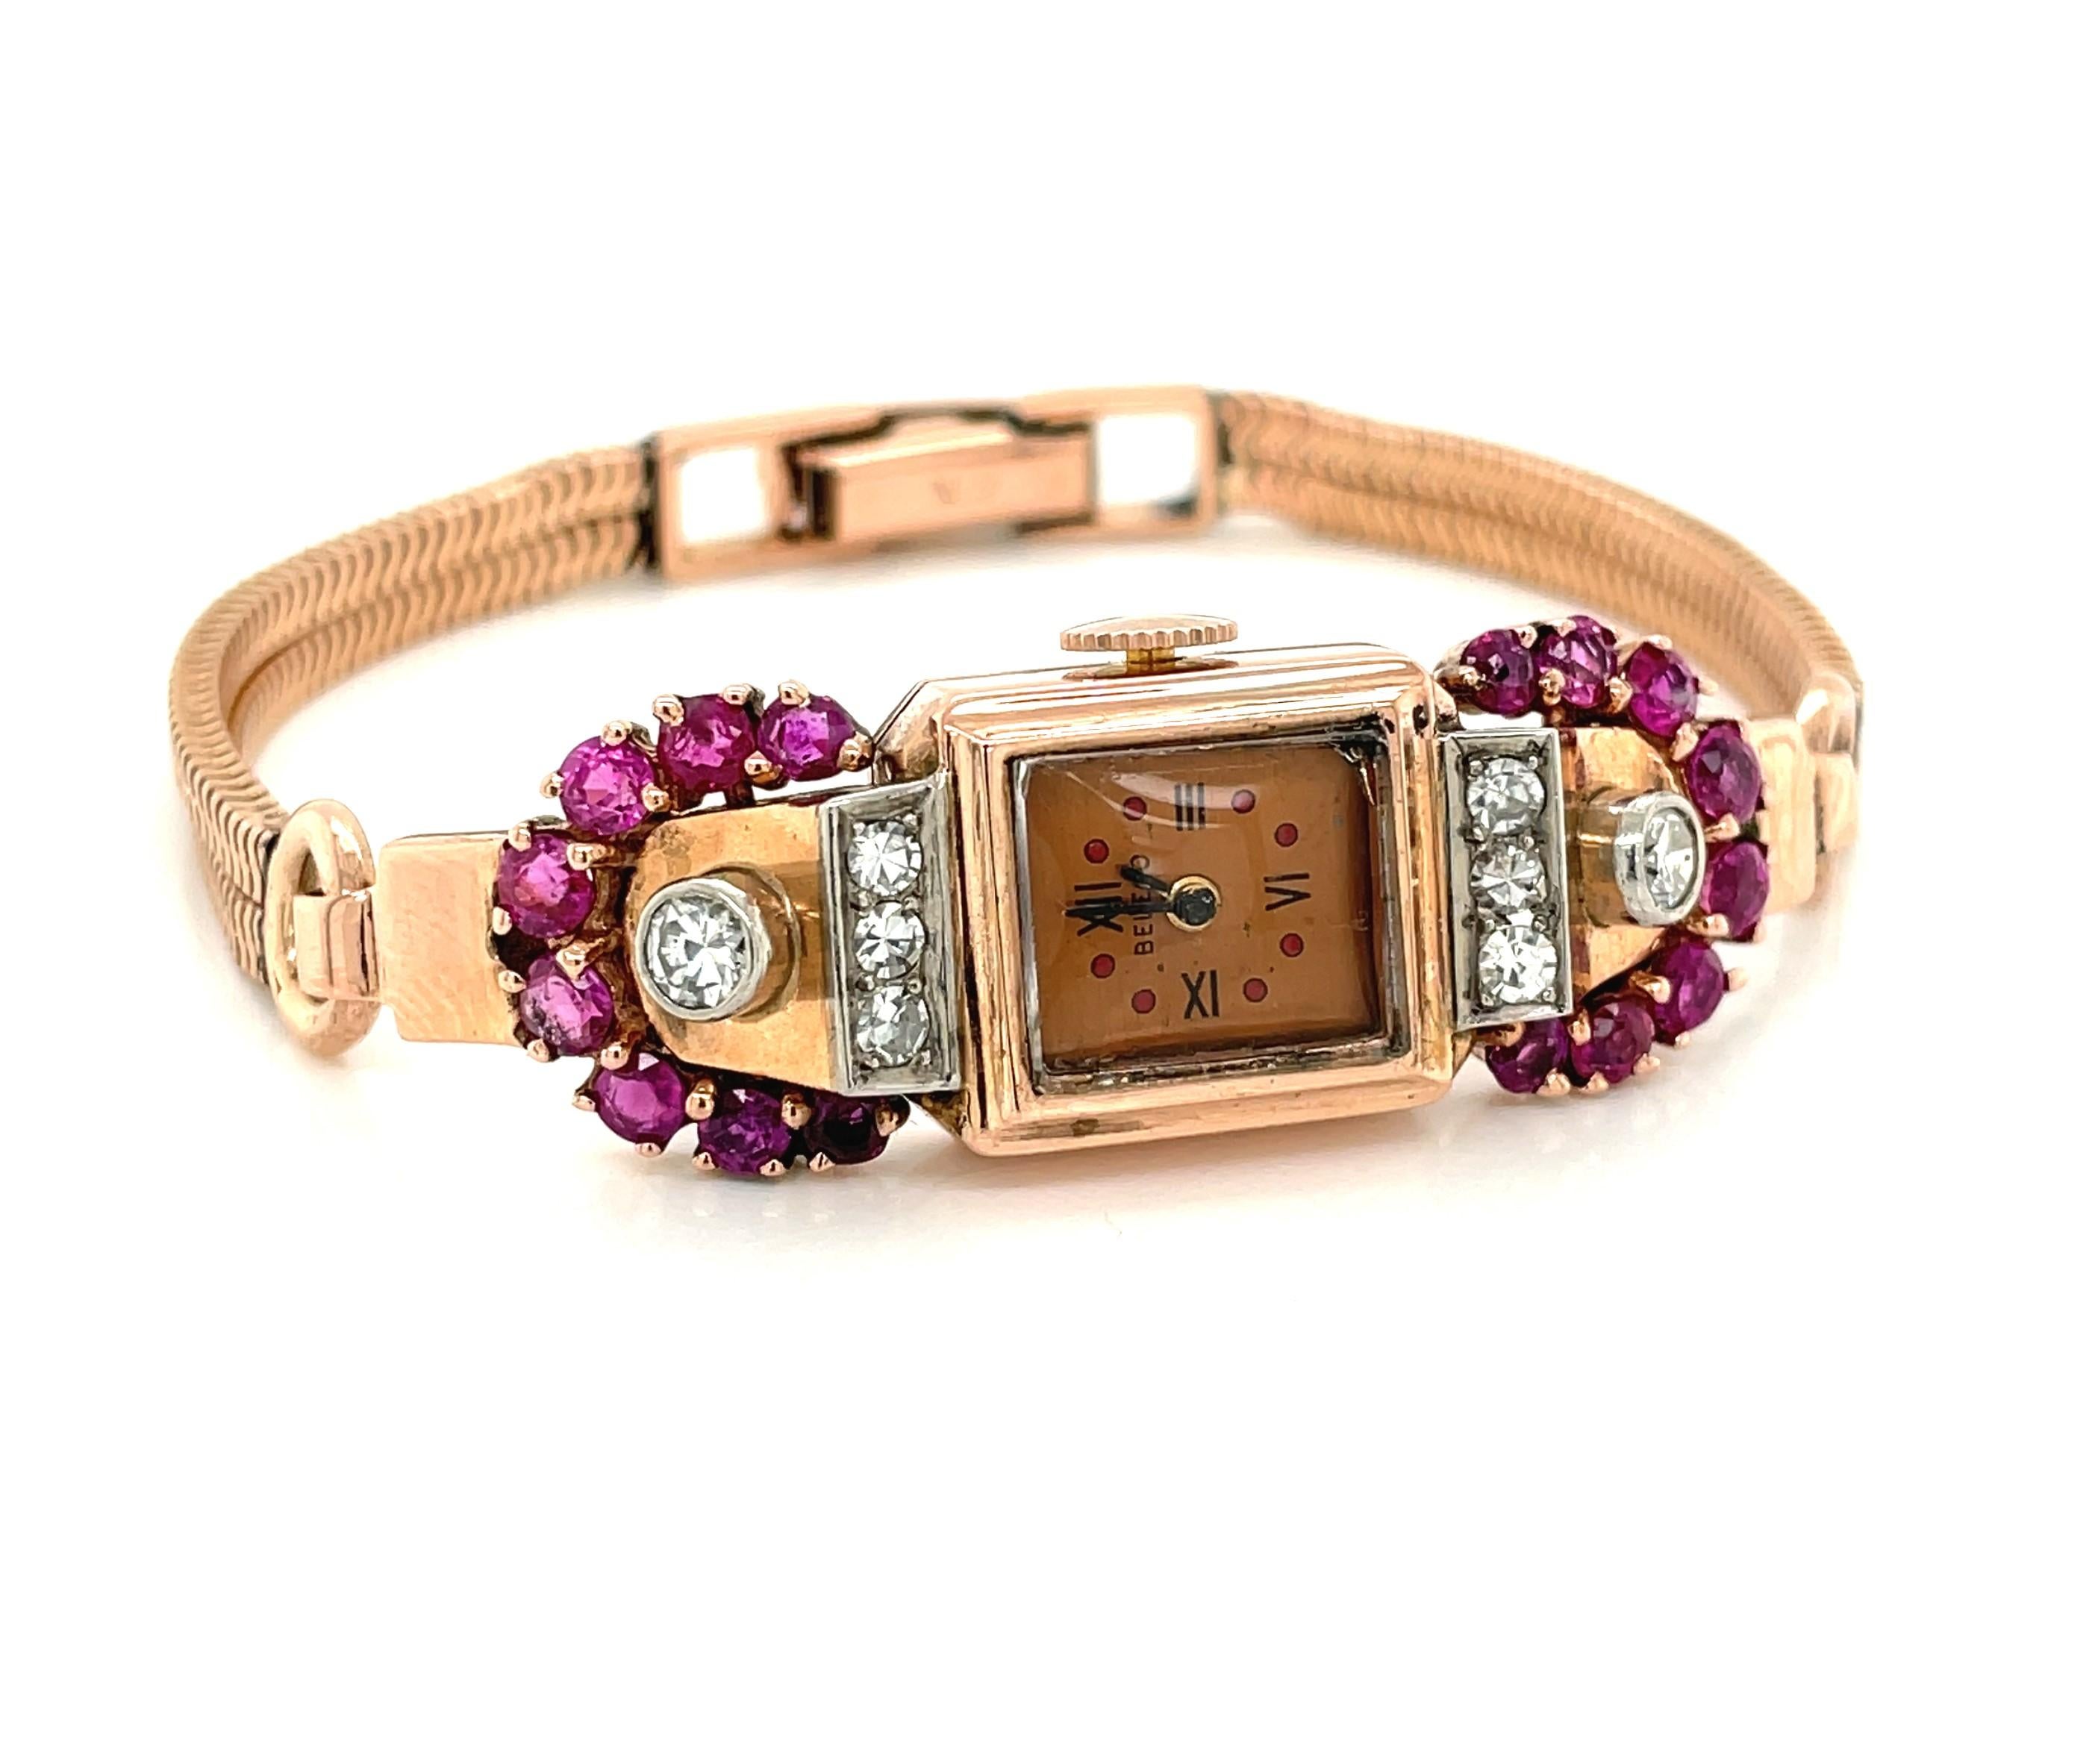 Dieser elegante Zeitmesser aus 14-karätigem Roségold im Art-déco-Stil ist mit Rubinen im Minenschliff von 0,80 TW und runden, facettierten Diamanten von 0,50 TW geschmückt. Eine Schweizer Handaufzugsuhr mit 17 Steinen von Belco hält die Zeit an. Das